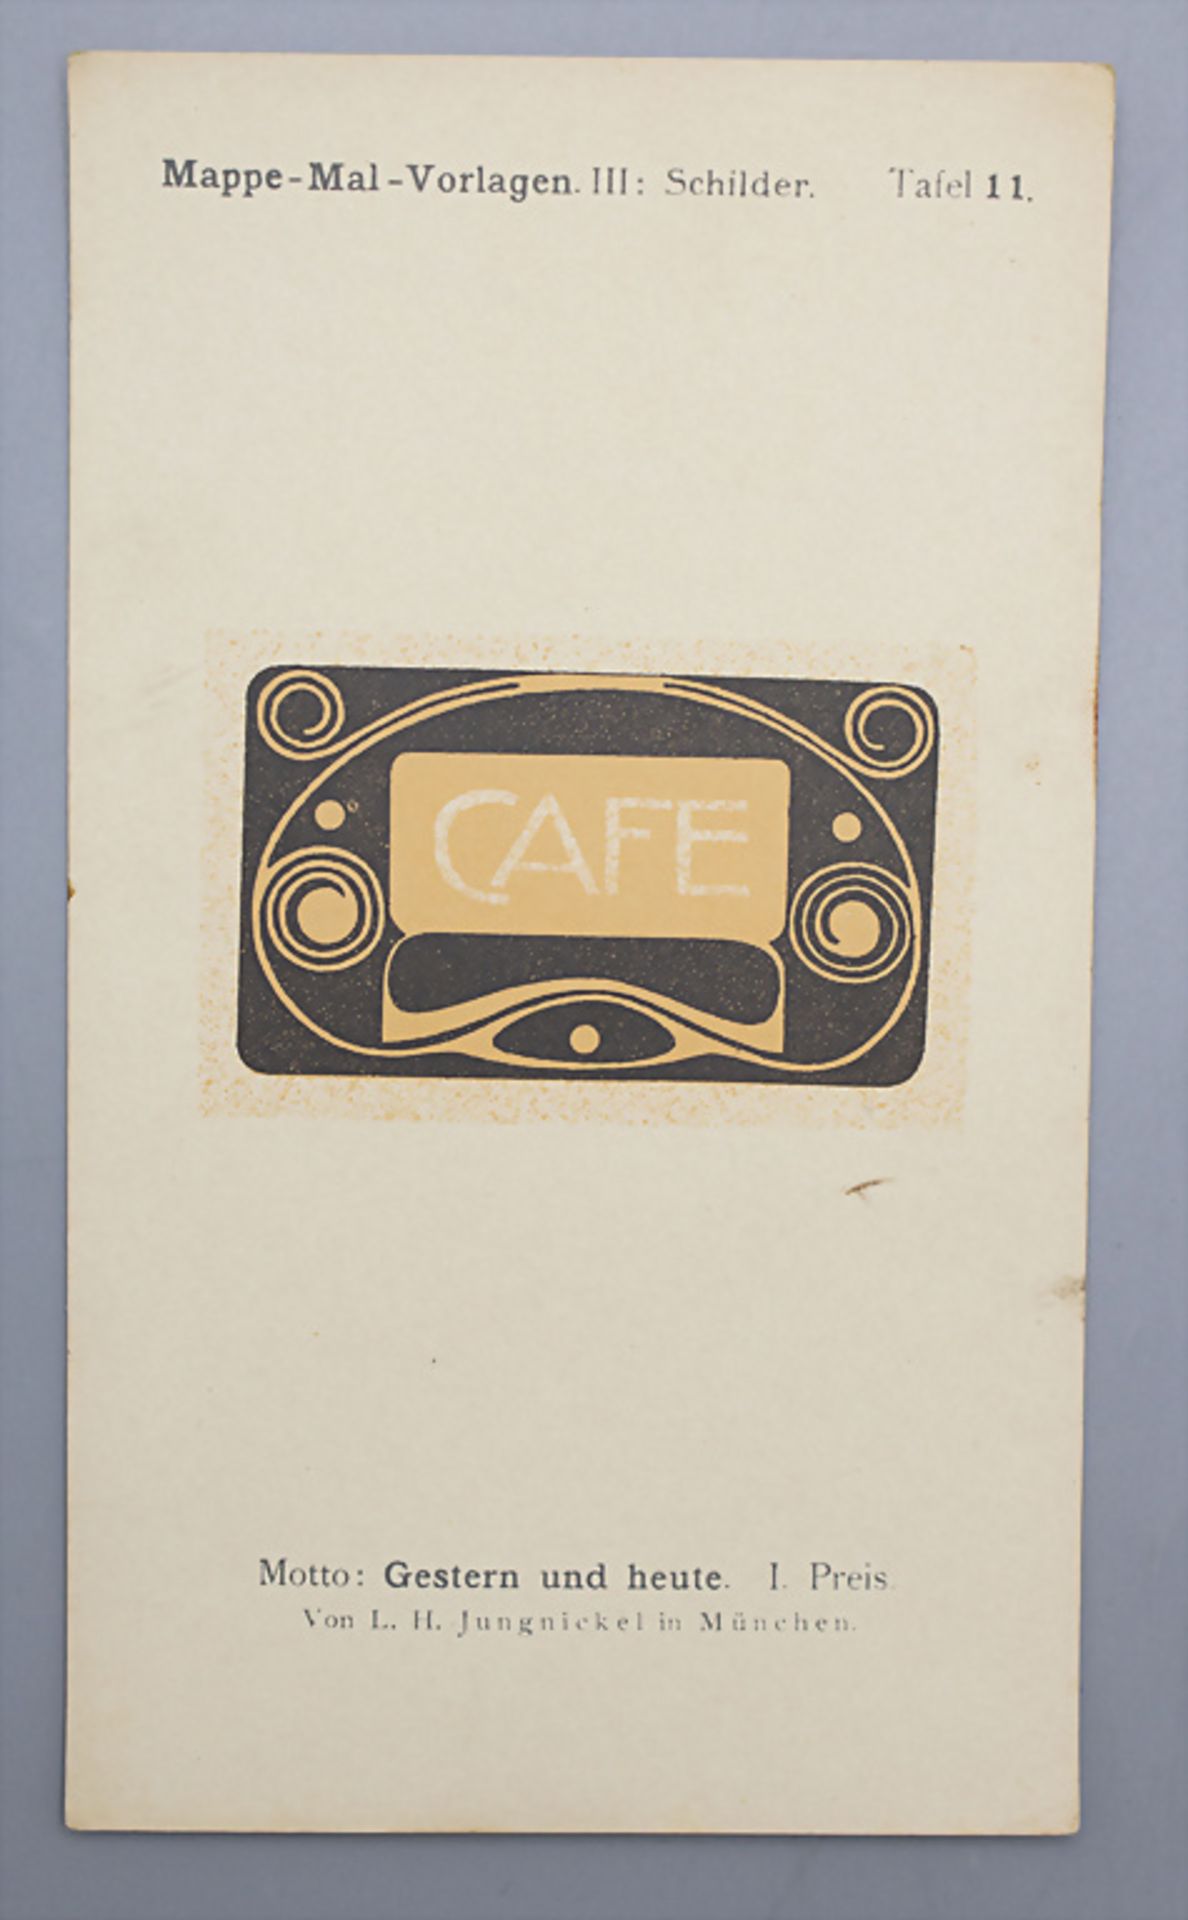 Jugendstil Mal-Vorlagen für Werbeschilder auf 36 Tafeln / 36 Art Nouveau pattern for ... - Bild 8 aus 9